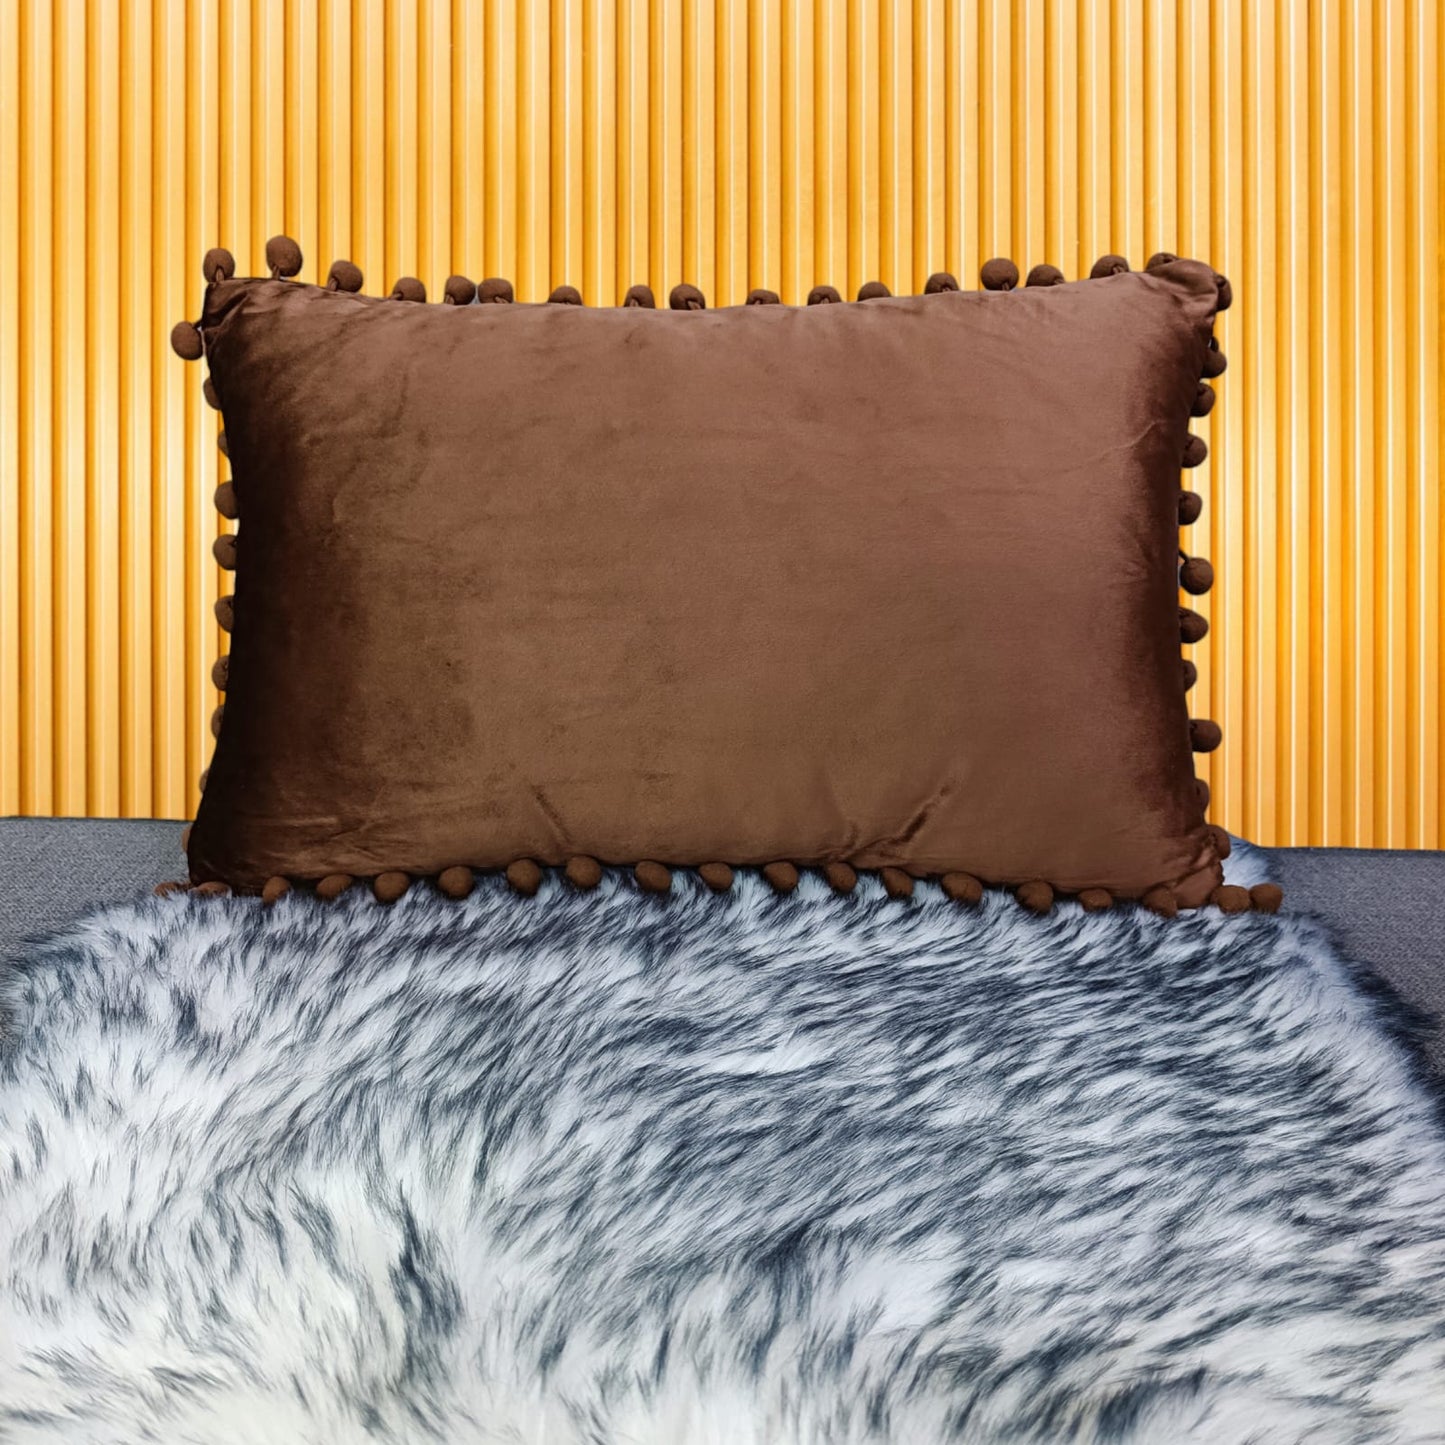 Rectangular Cushion Cover rp - 30